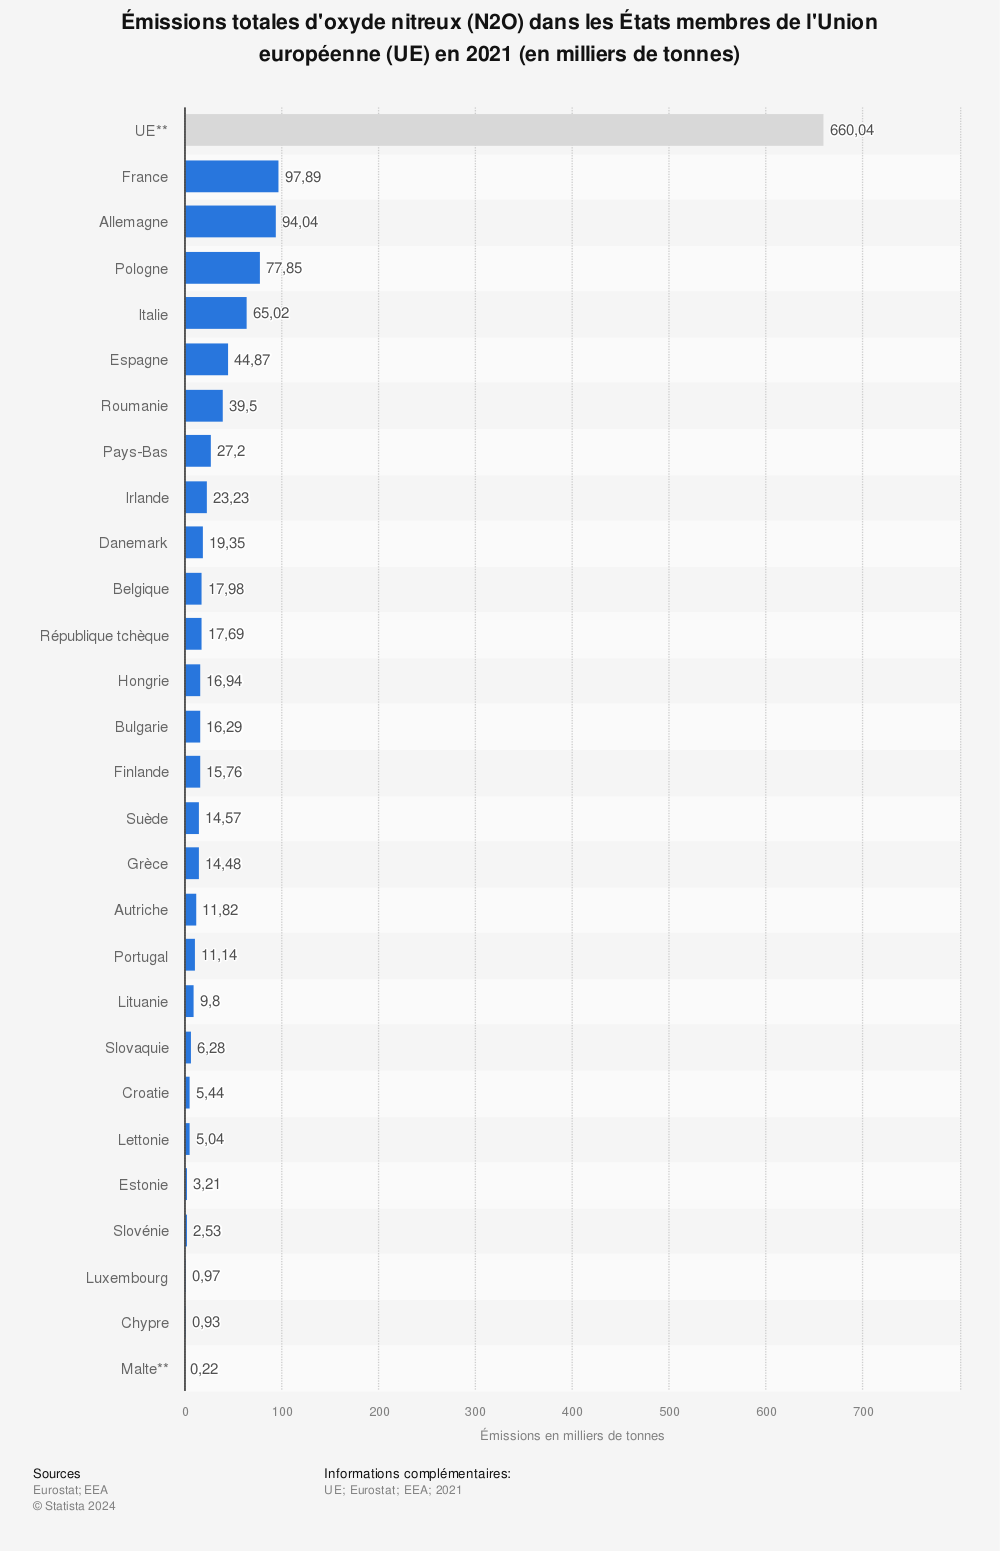 Statistique: Émissions totales d'oxyde nitreux (N2O) dans les États membres de l'Union européenne (UE) en 2014 (en millions de tonnes d'équivalent CO2) | Statista